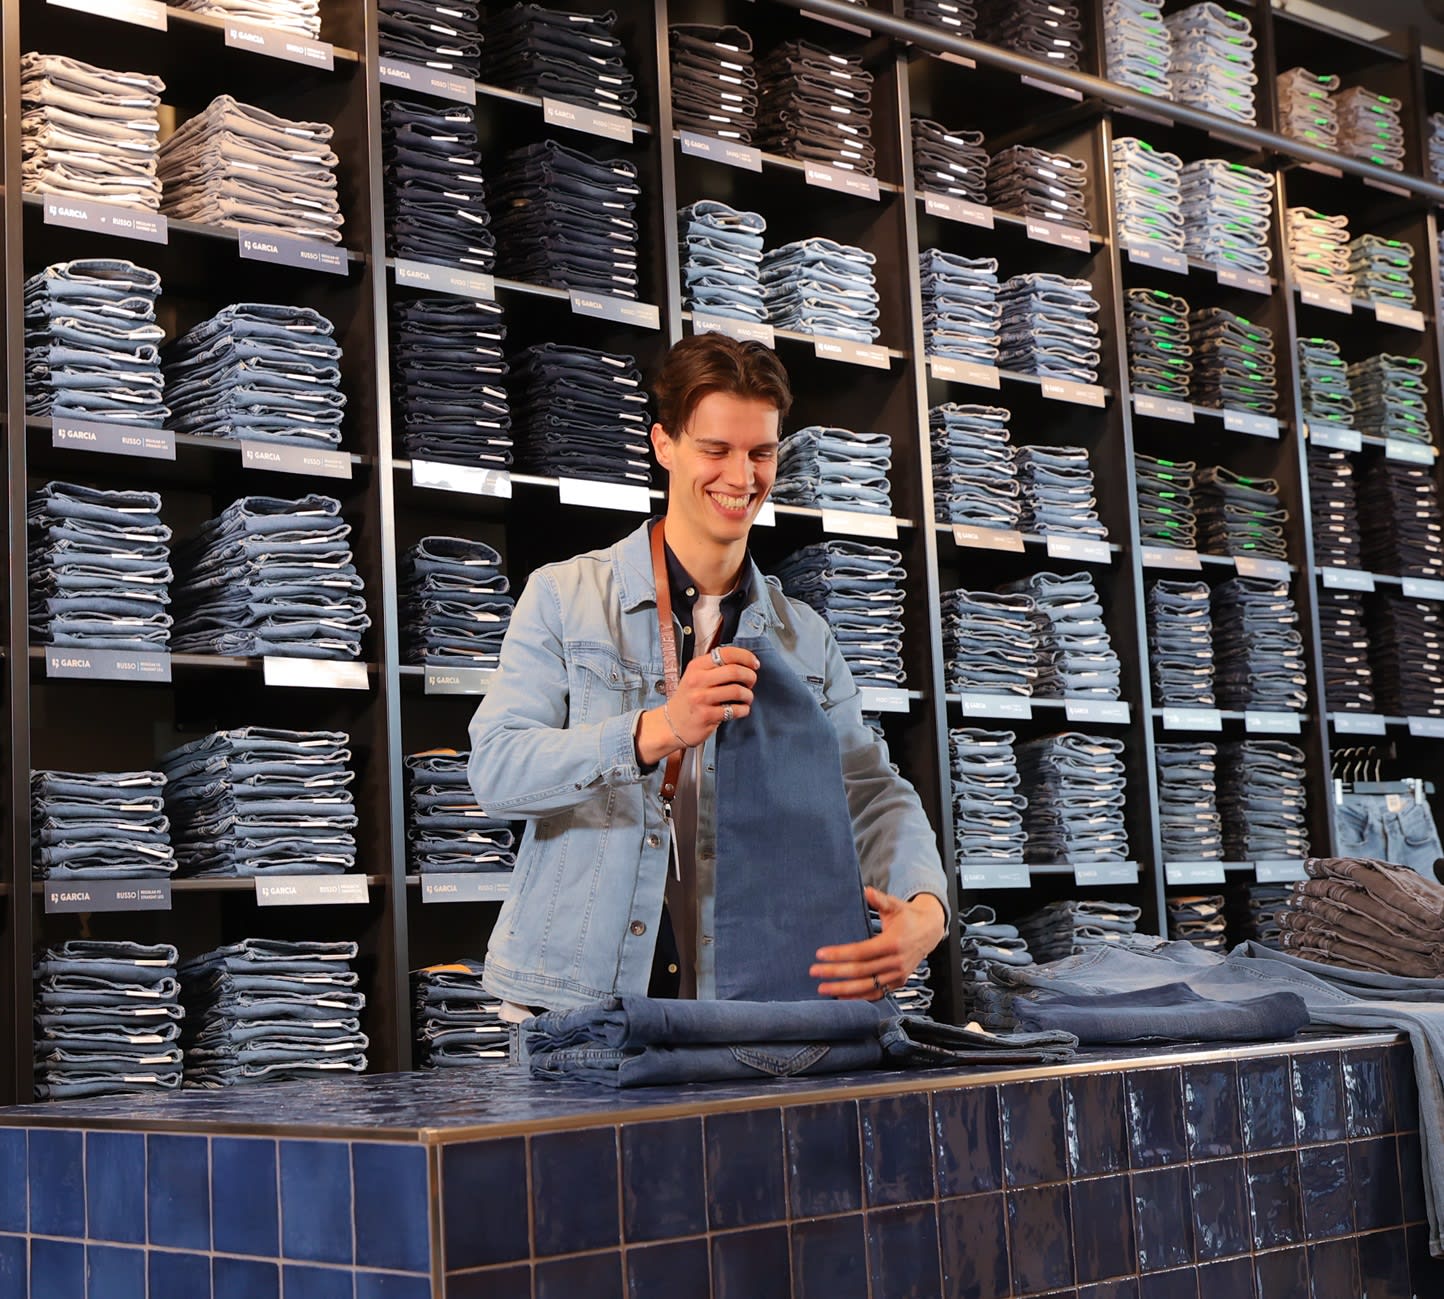 Winkel vacatures bij Jeans Centre door heel Nederland. Vacature storemanager of verkoper